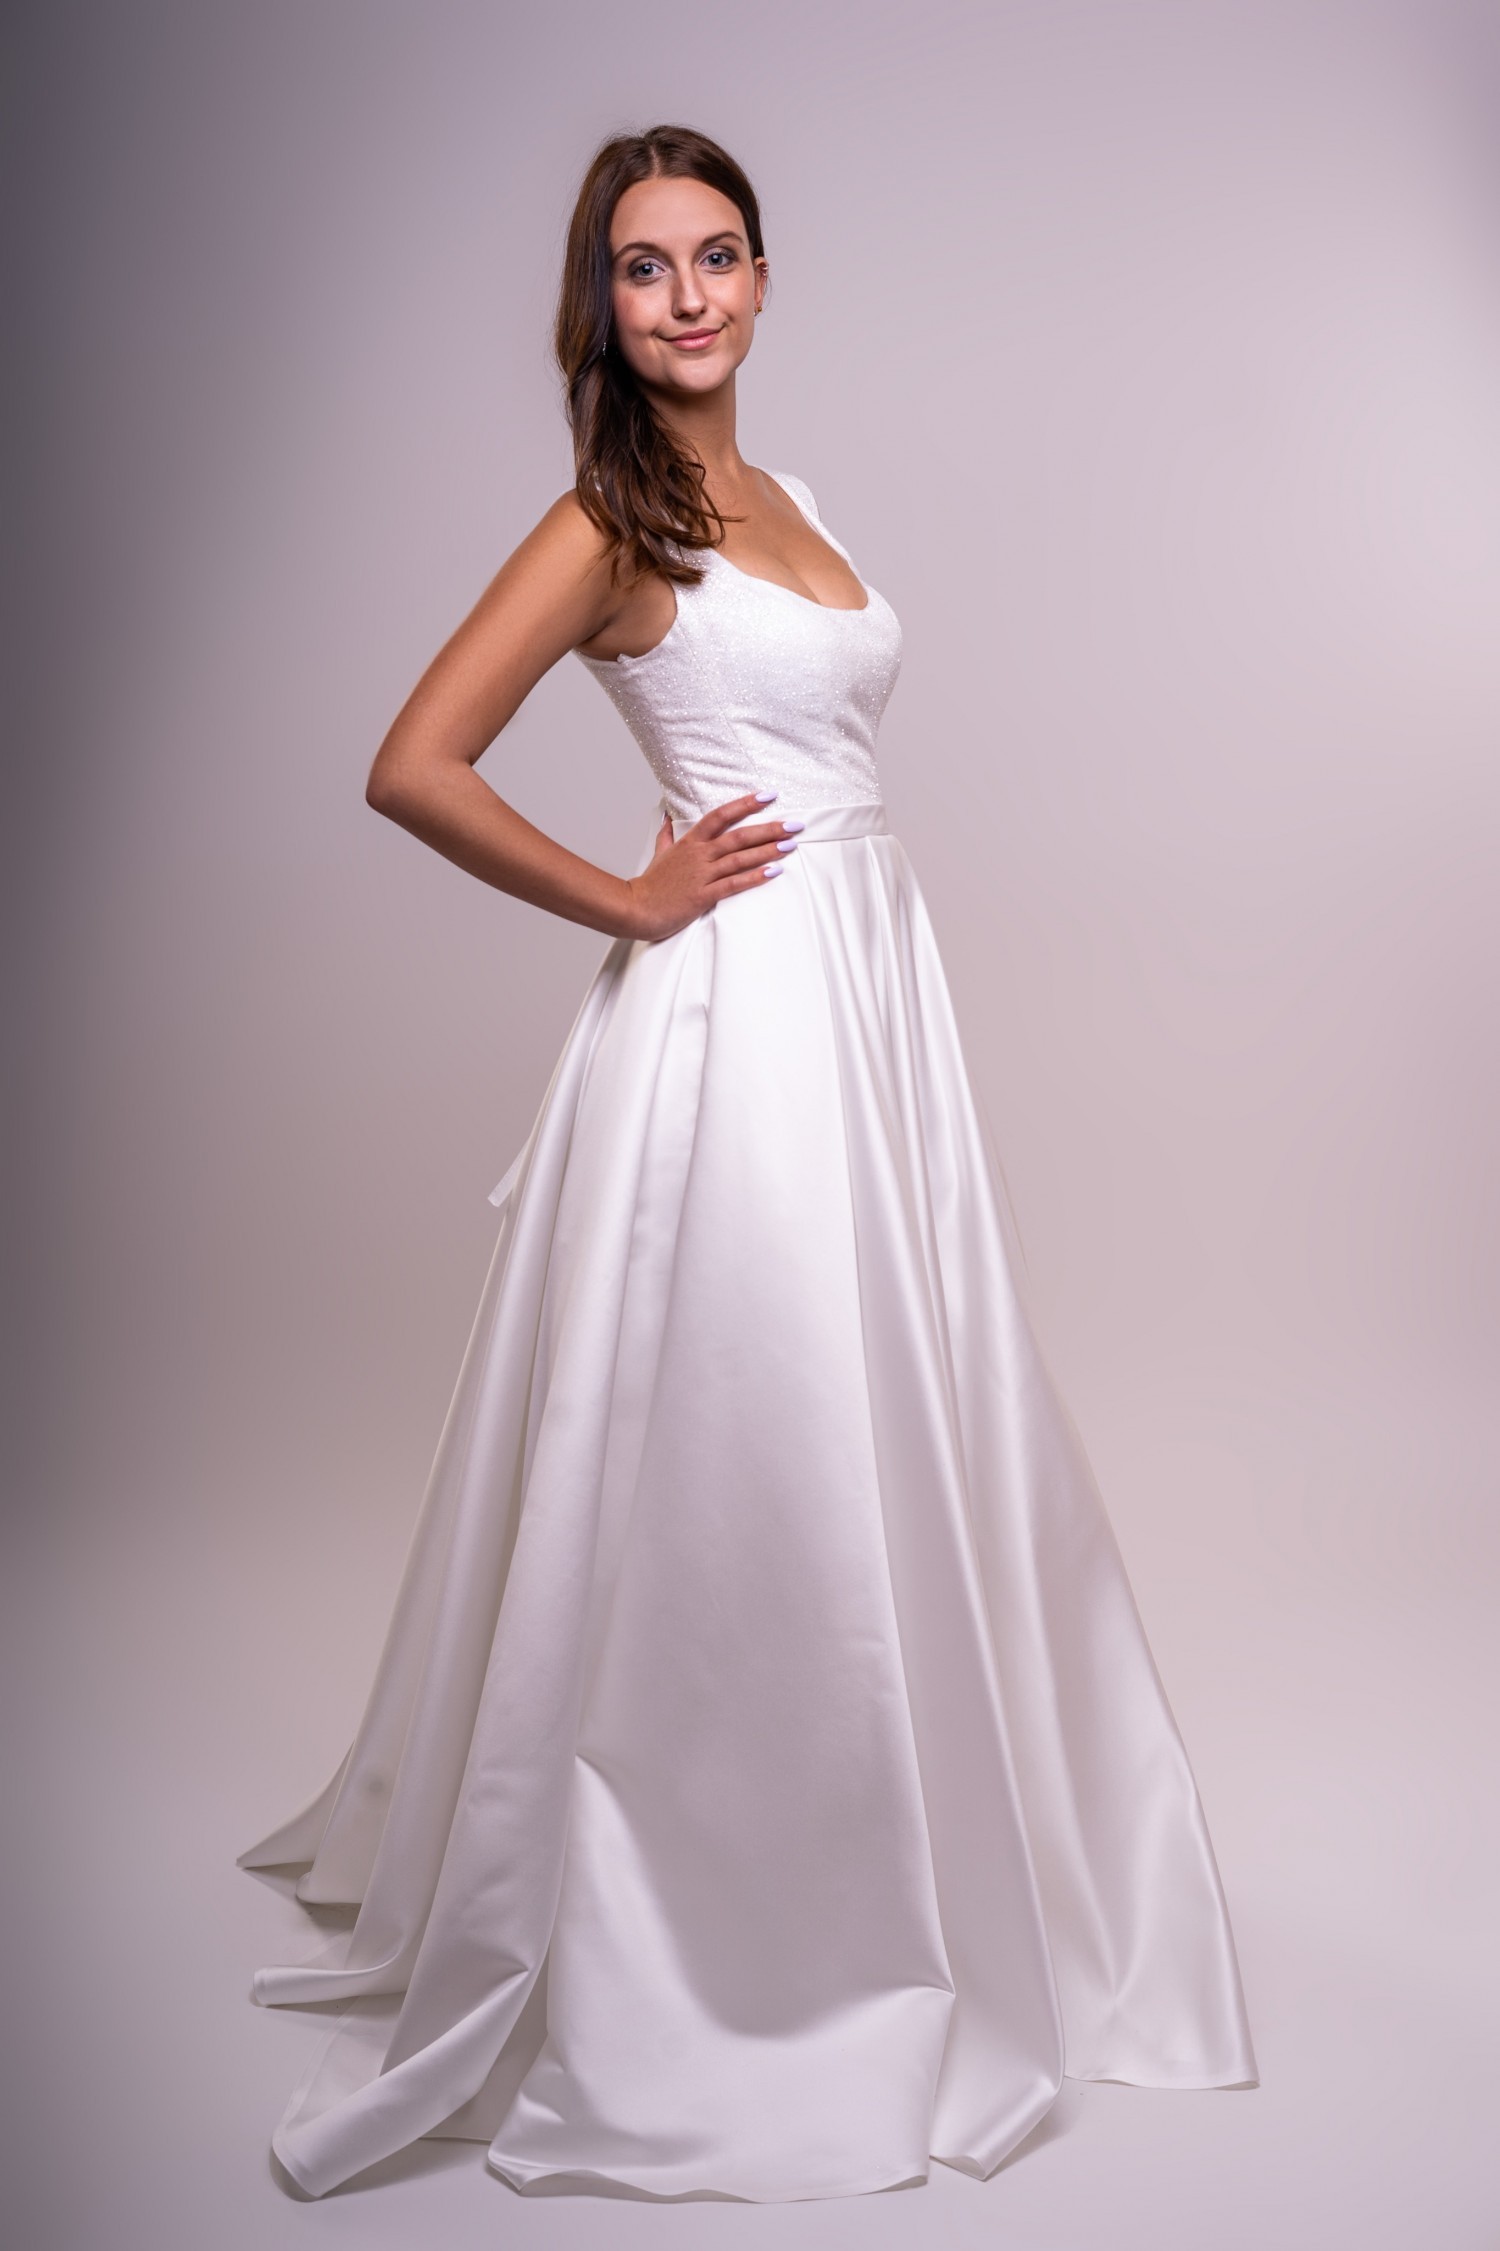 Obrázek ženy s dlouhými bílými společenskými šaty